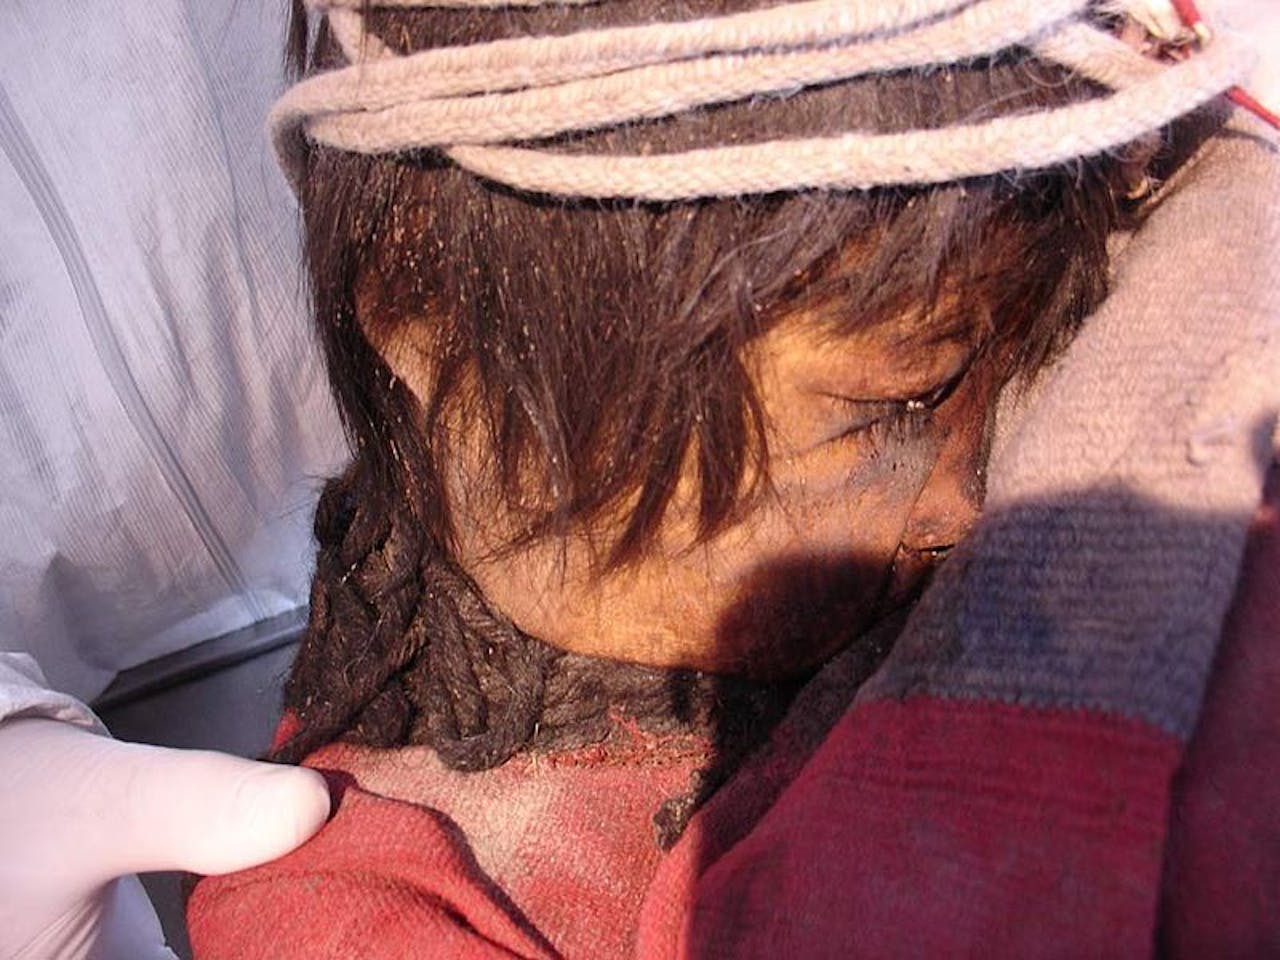 Een van de 'kinderen van Llullaillaco' - drie Inca kindmummies gevonden in de gelijknamige regio. De haren, kleren en huid van het kind zijn perfect bewaard gebleven.